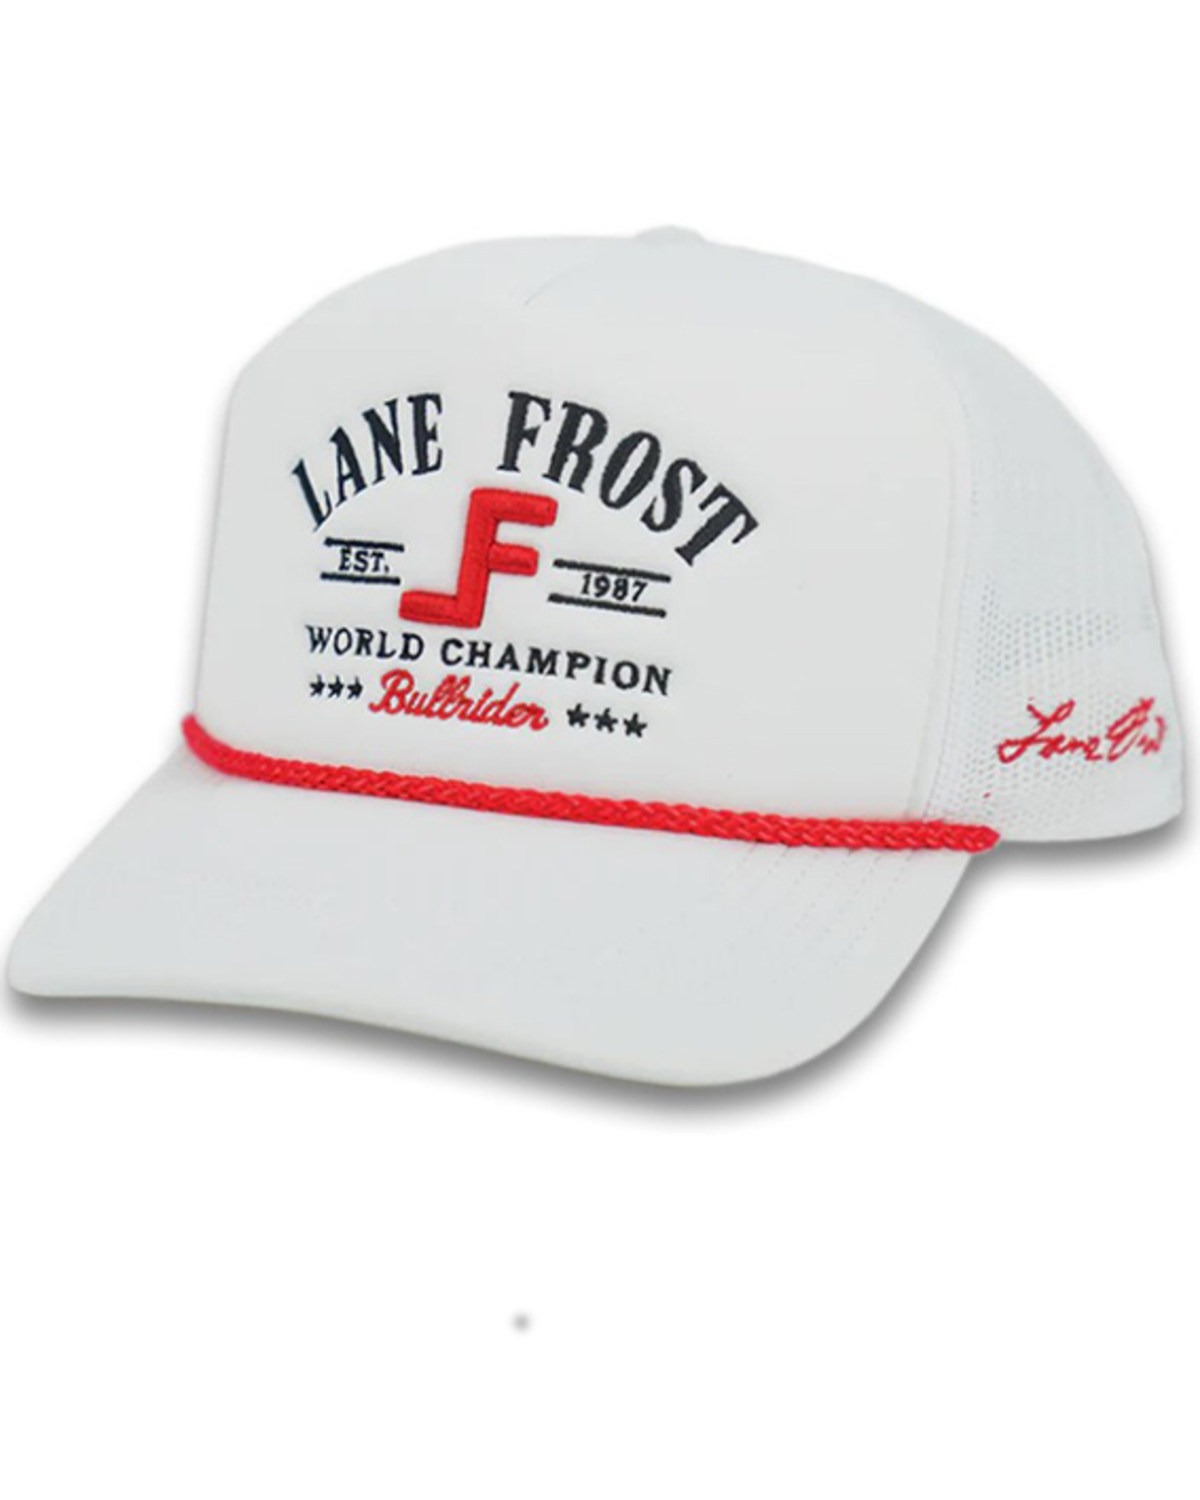 Lane frost Men's Tough Logo Ball Cap